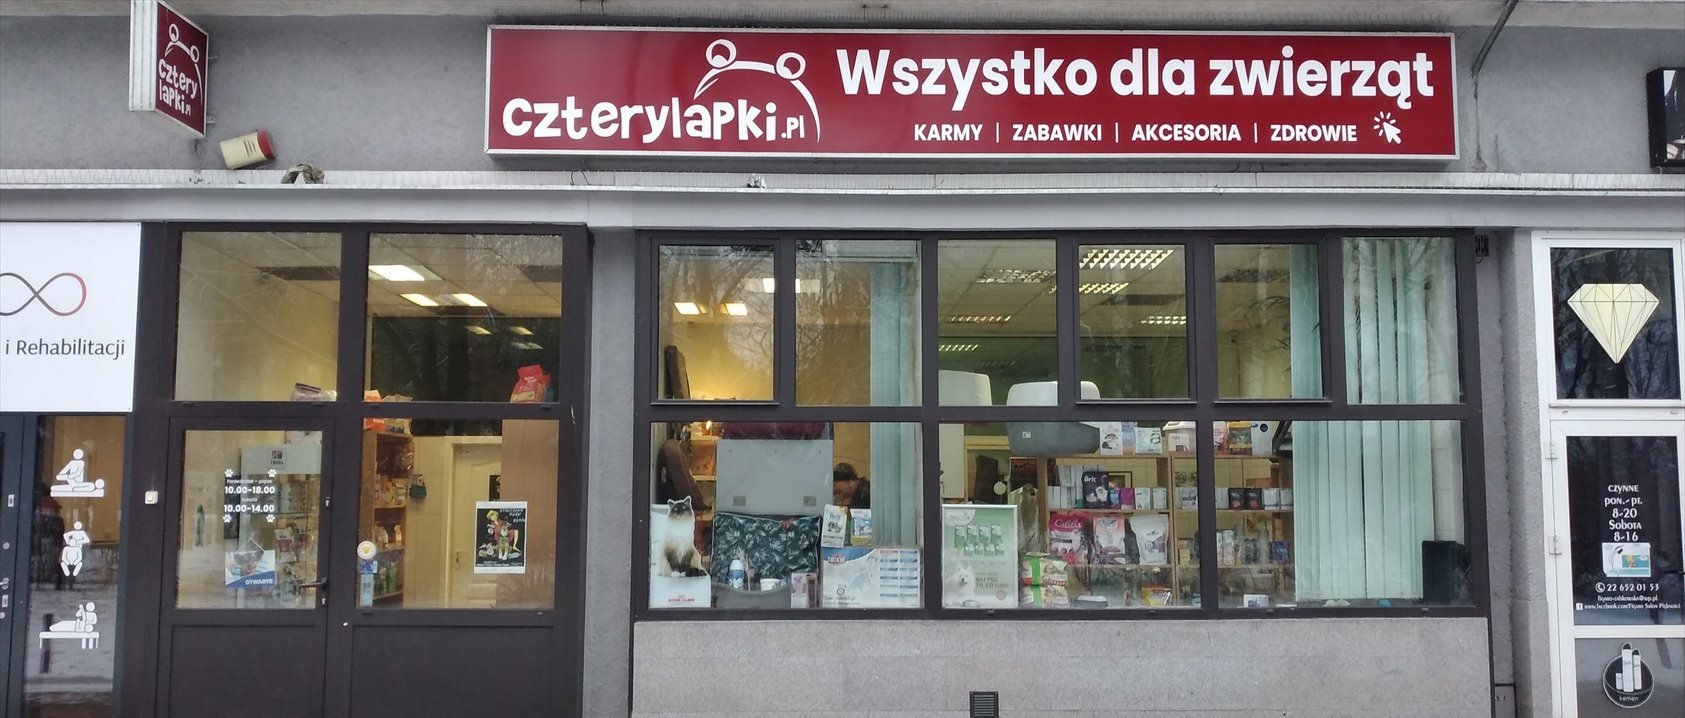 Lokal użytkowy na wynajem Warszawa, Śródmieście, Graniczna 4  58m2 Foto 1